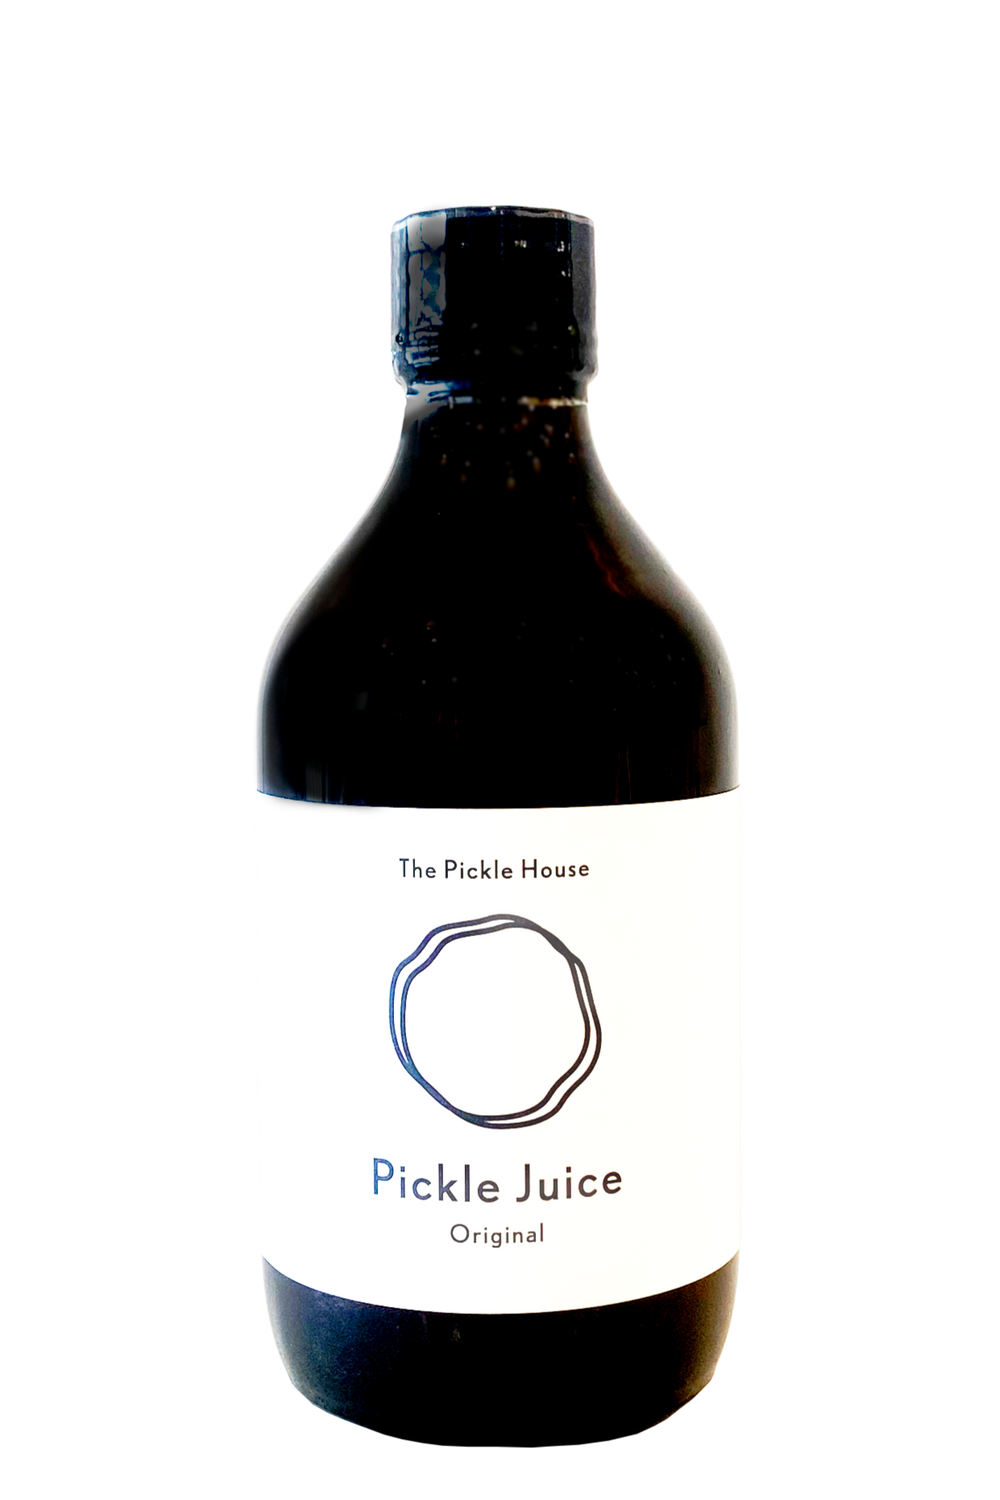 Original Pickle Juice